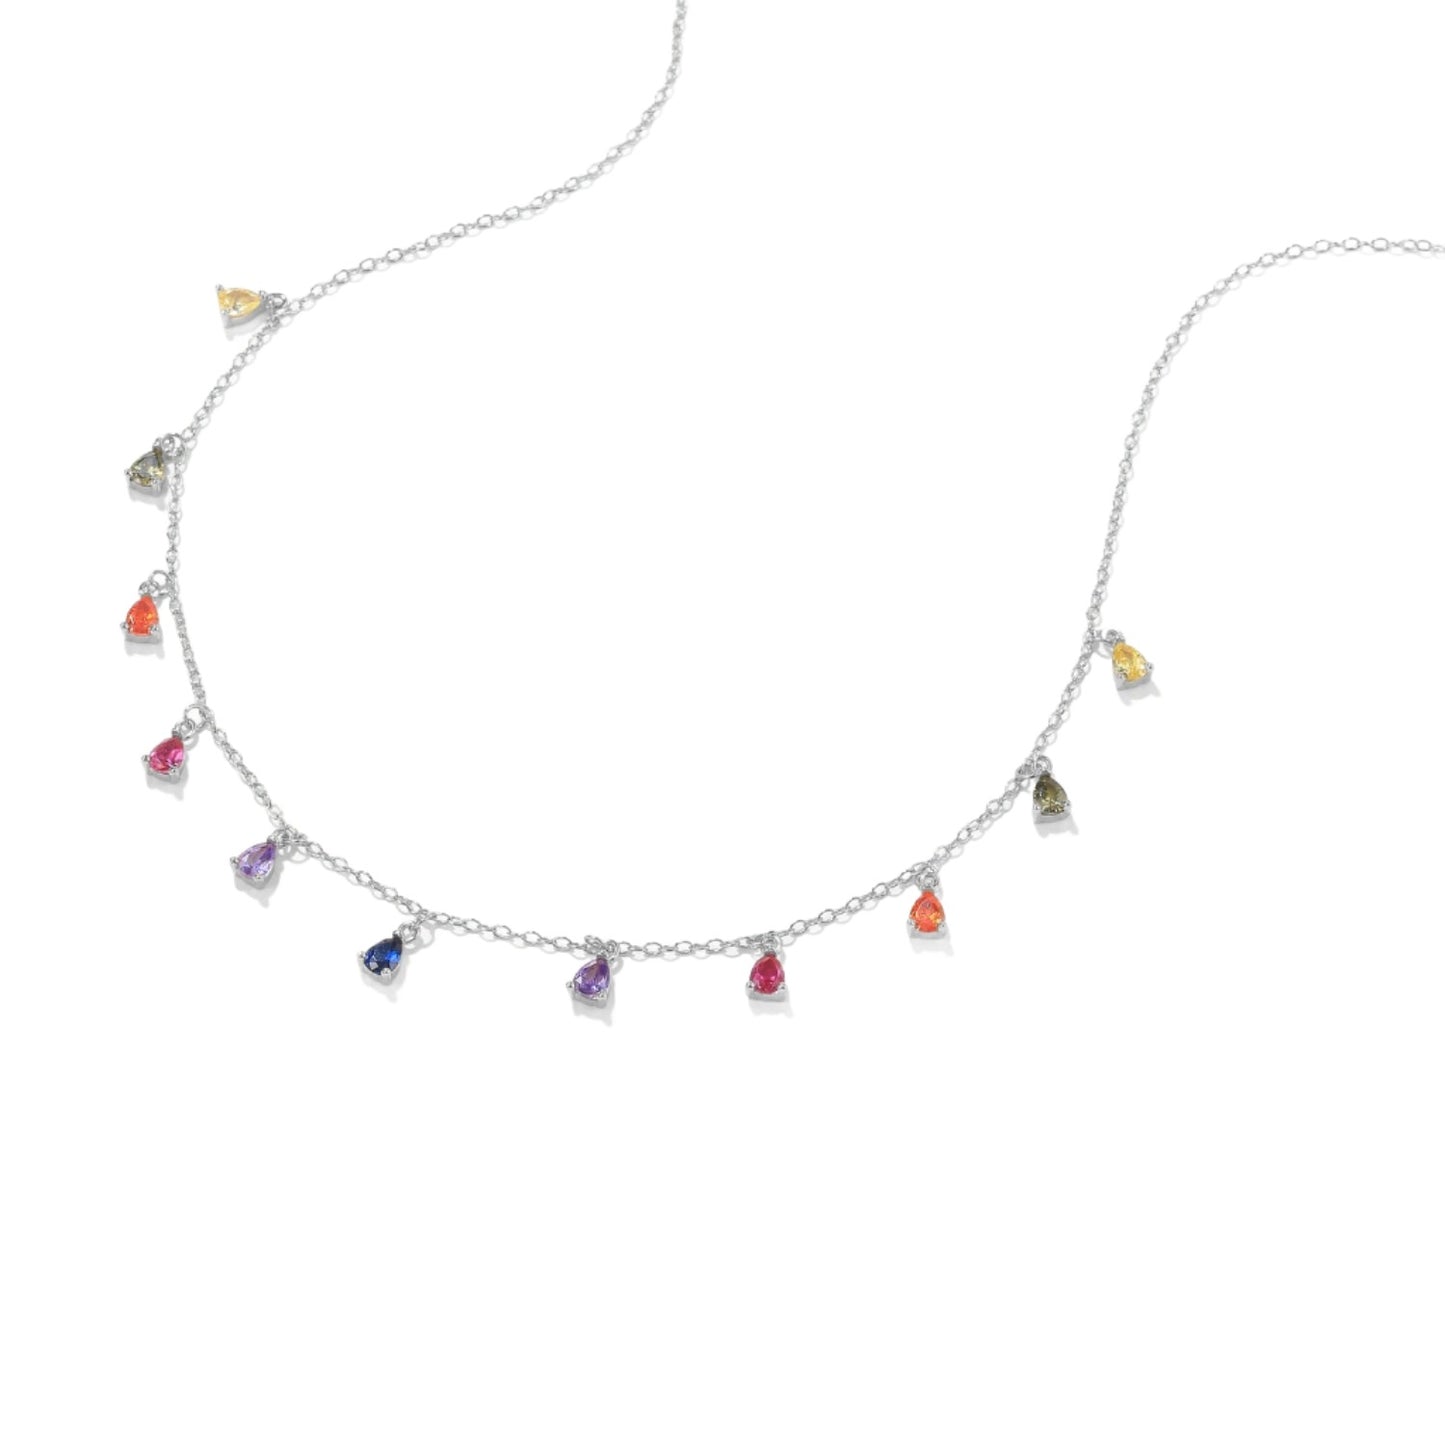 Liz Rainbow Necklace